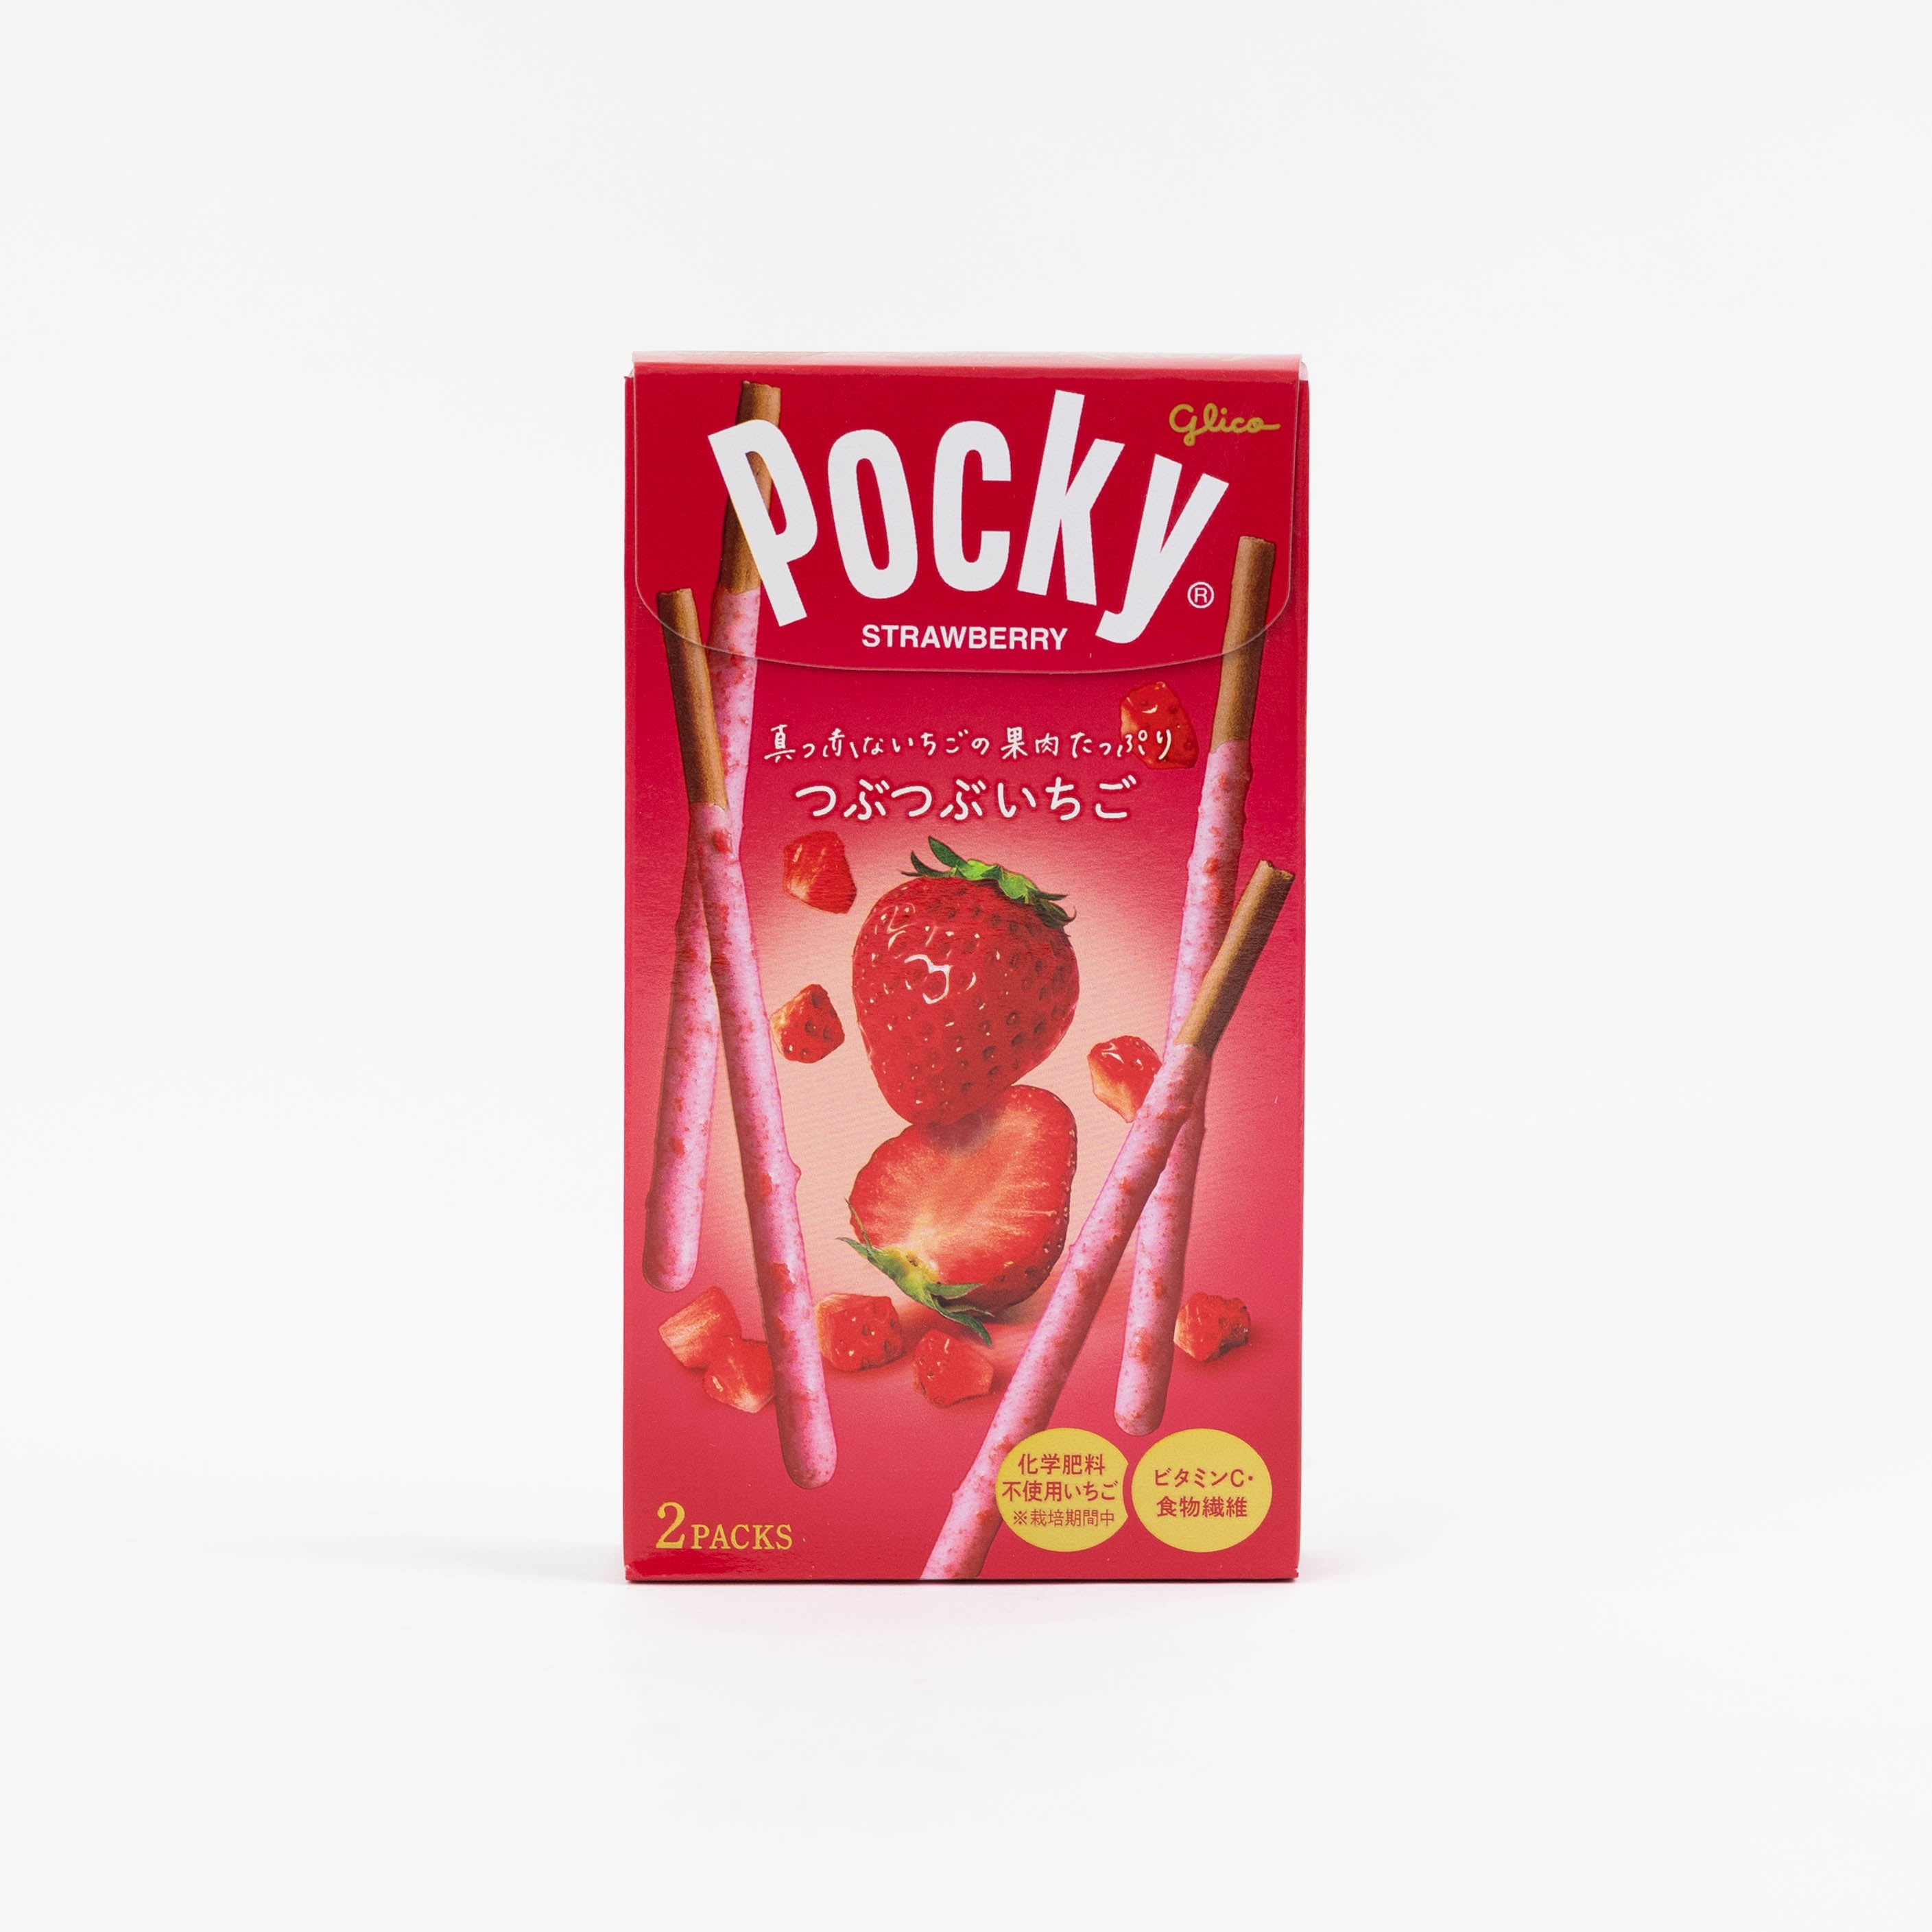 dinese glico onlineshop asiashop pocky strawberry erdbeer asiatische lebensmittel